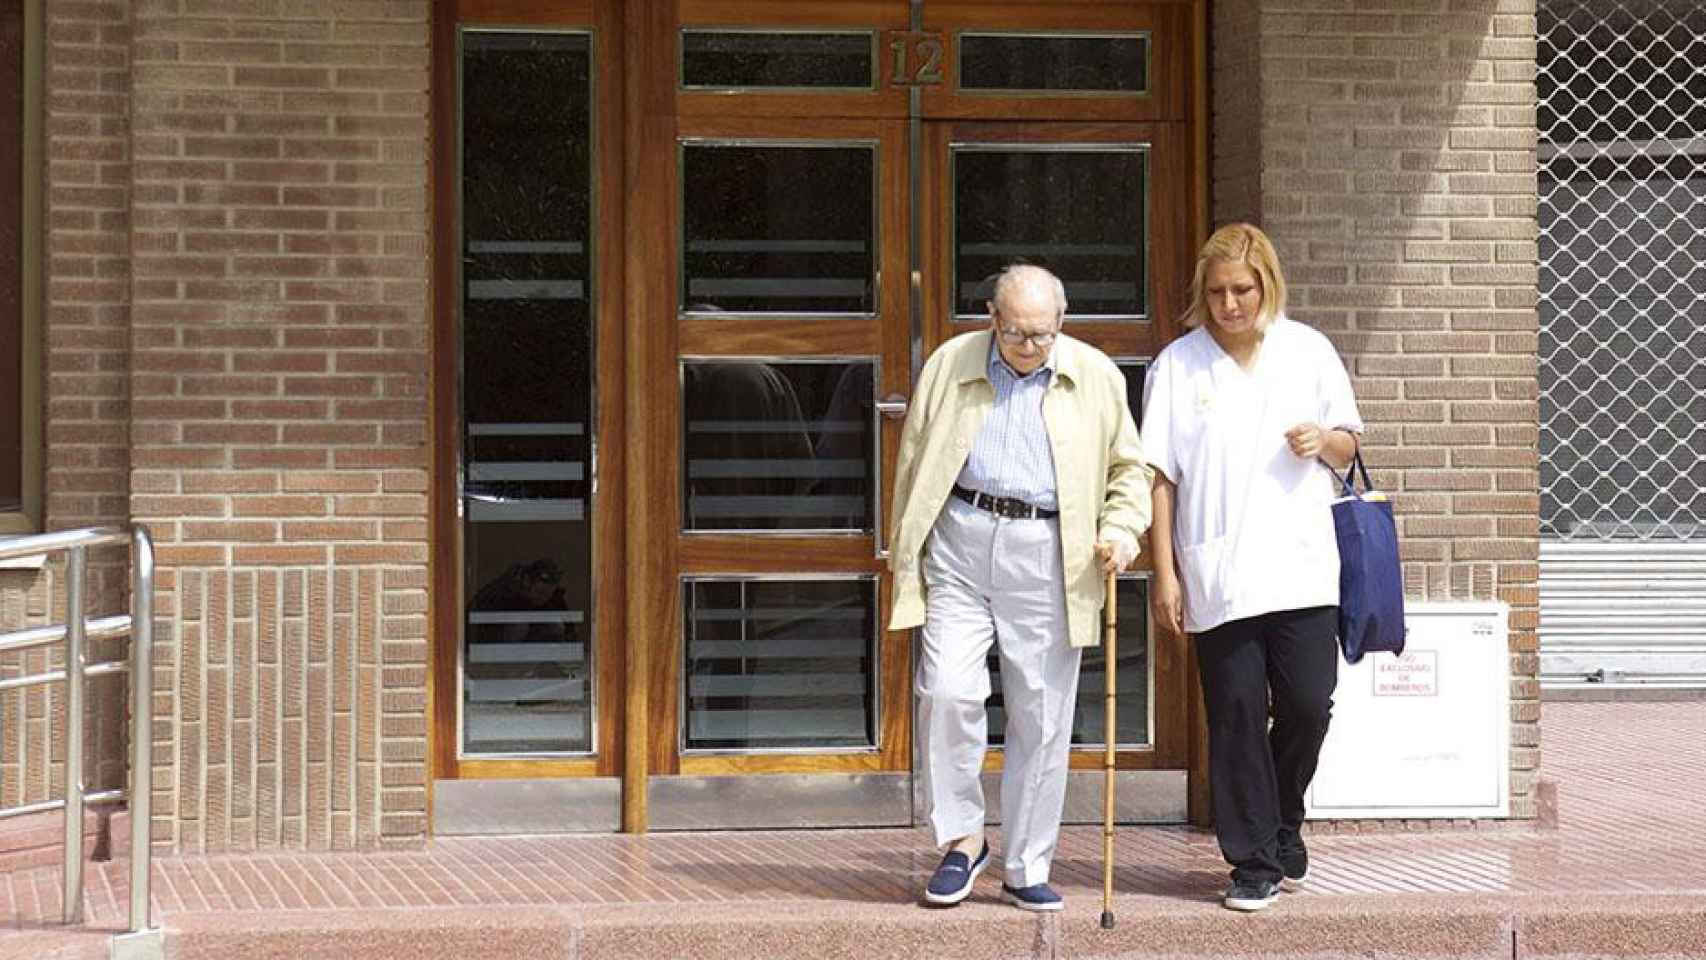 Envejecer en casa beneficia la salud y el bienestar de los mayores / LA CAIXA